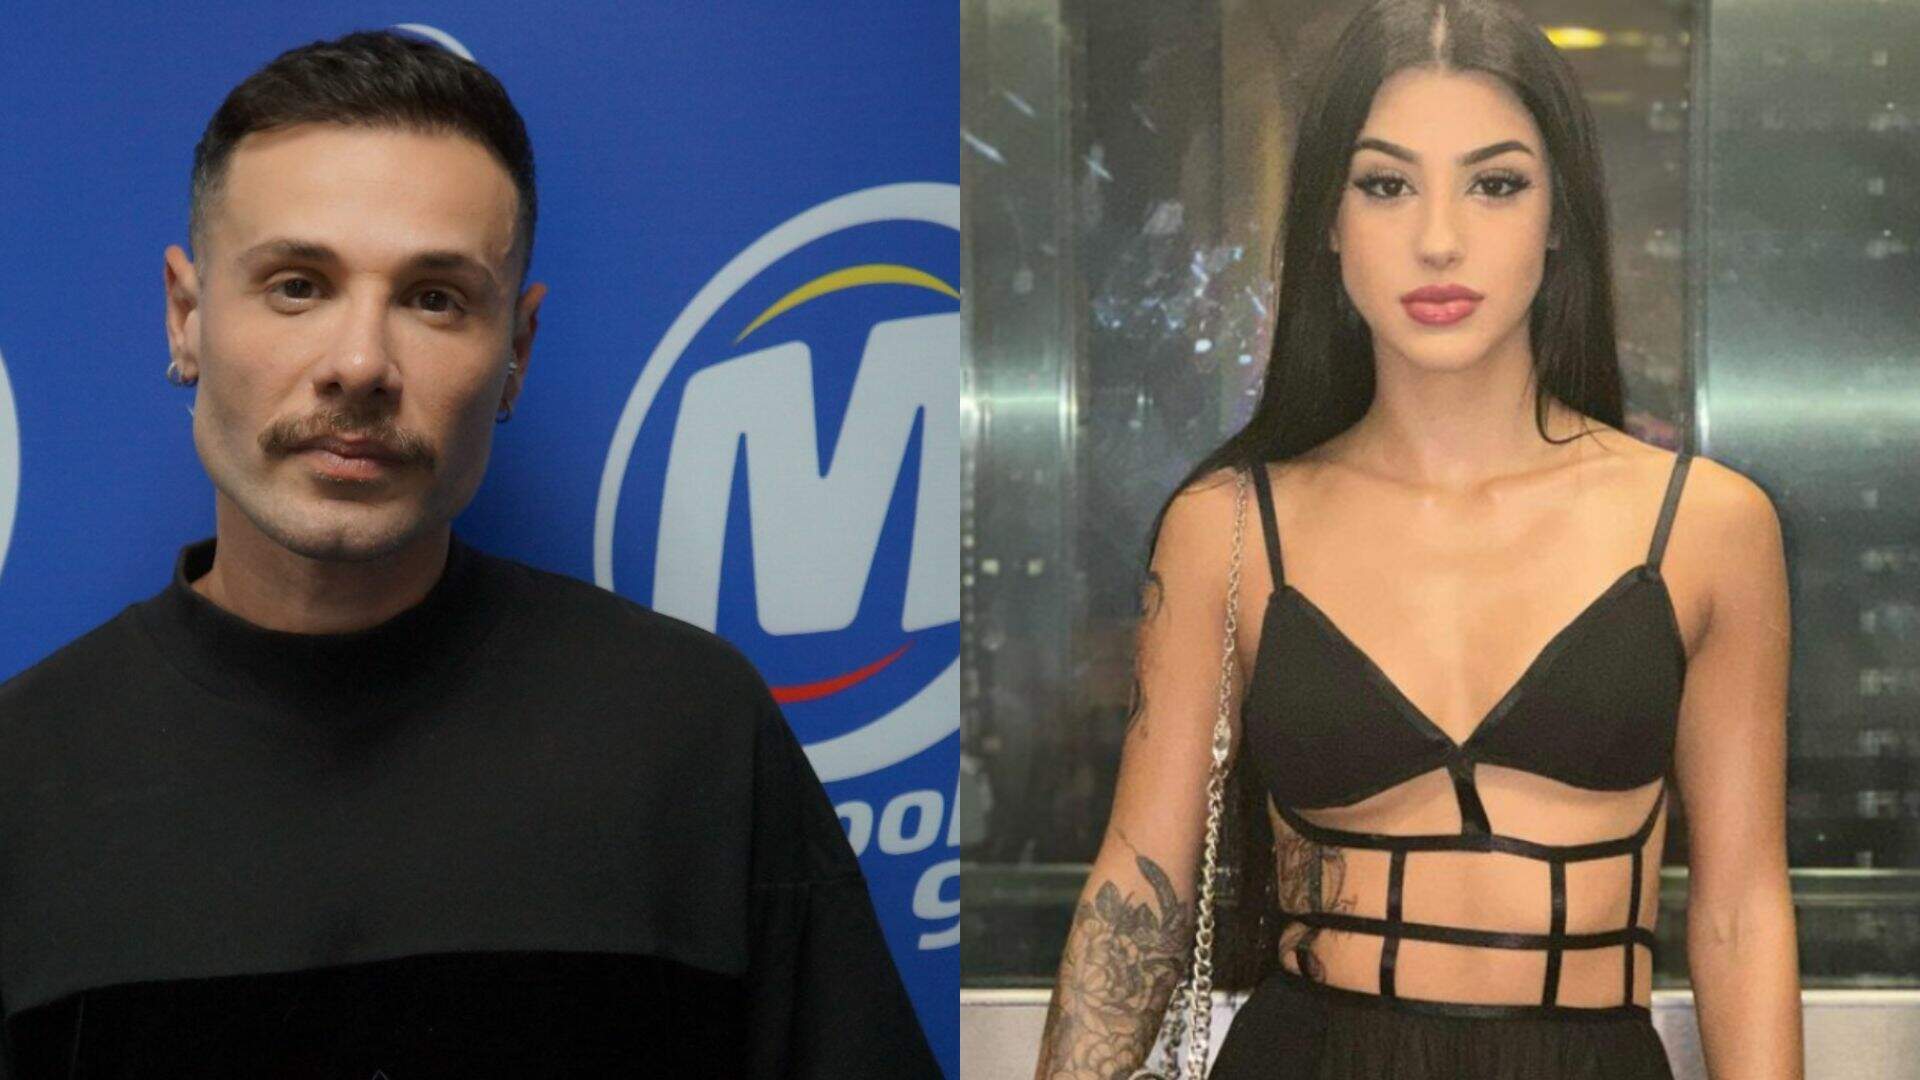 EXCLUSIVA: Alex Gallete detona Bia Miranda após fim do noivado e expõe o pensa: “Desnecessário” - Metropolitana FM